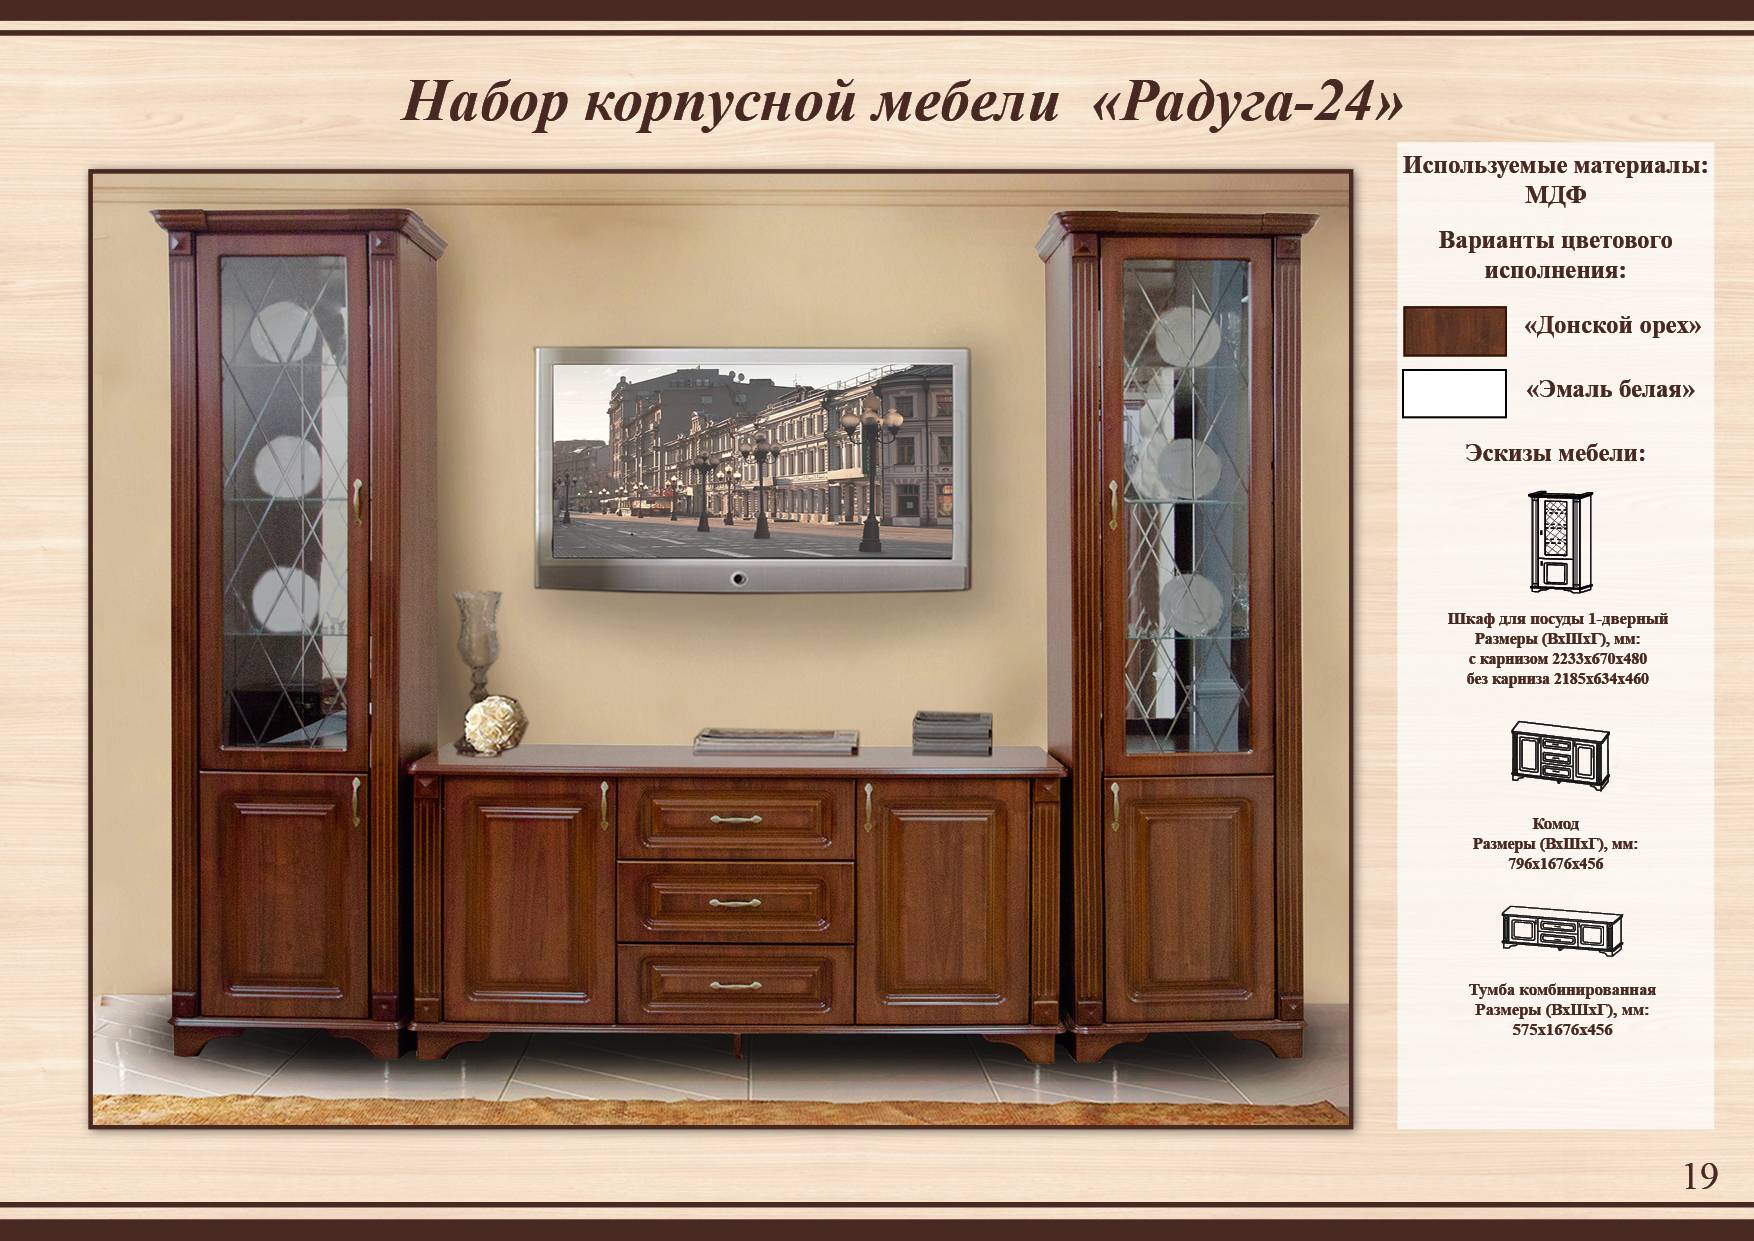 2 колонки с витражными стеклами и комод 3 ящика и 2 двери Радуги 24я